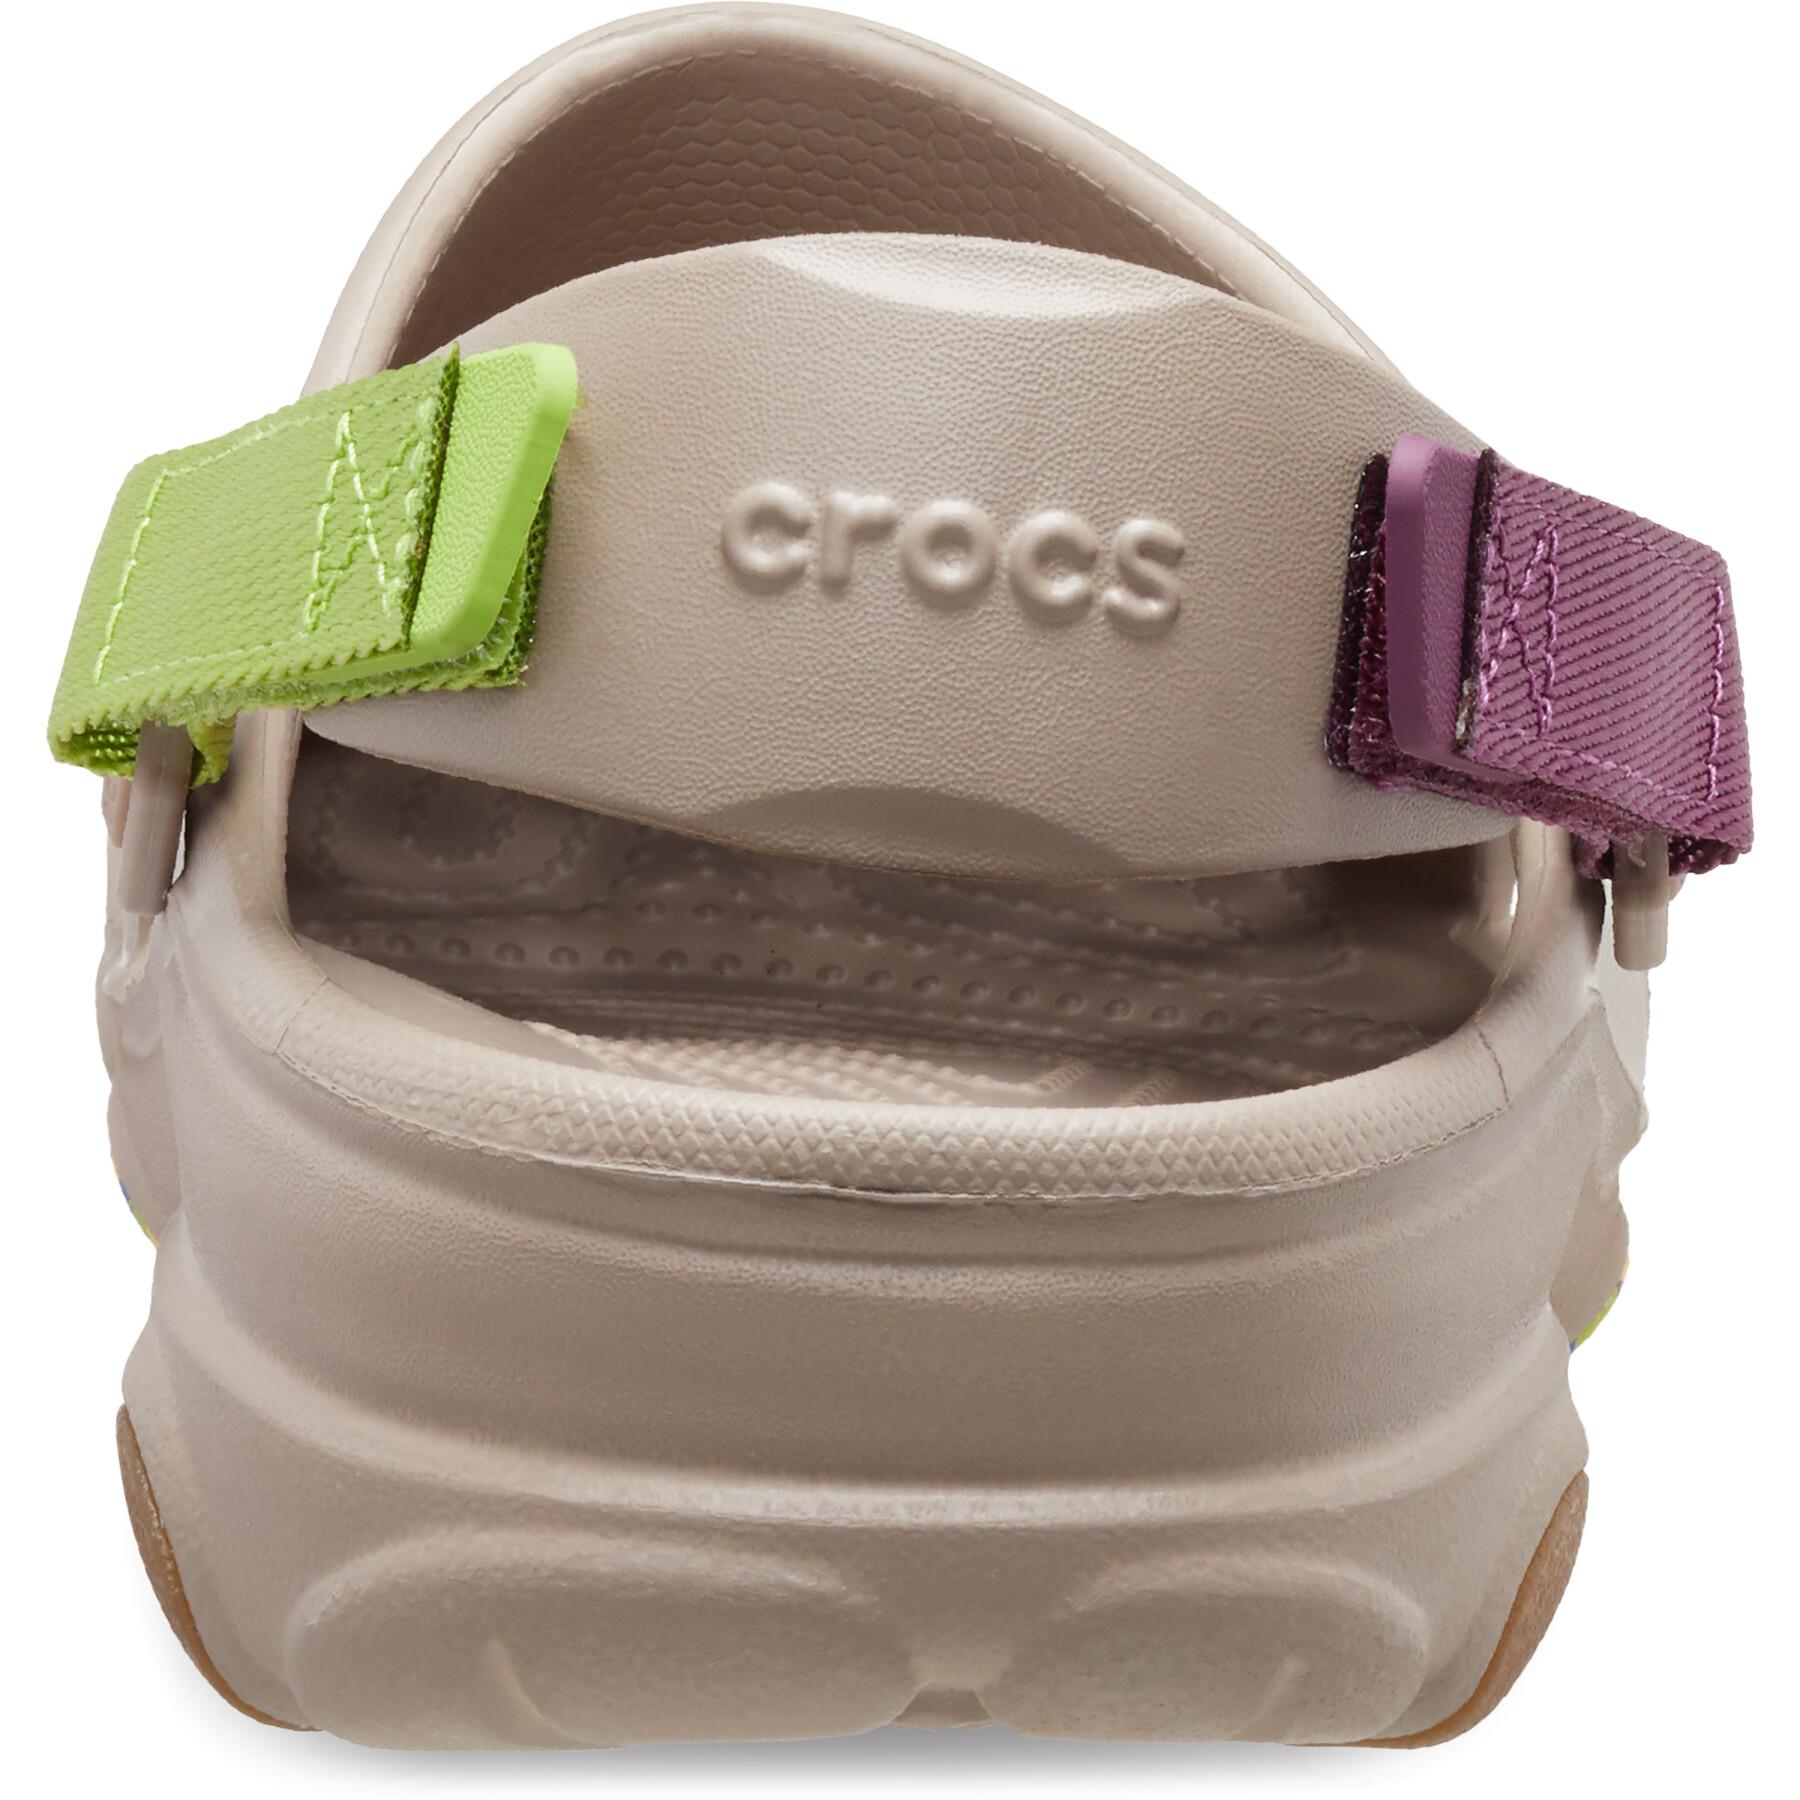 Clogs Crocs Classic All Terrain